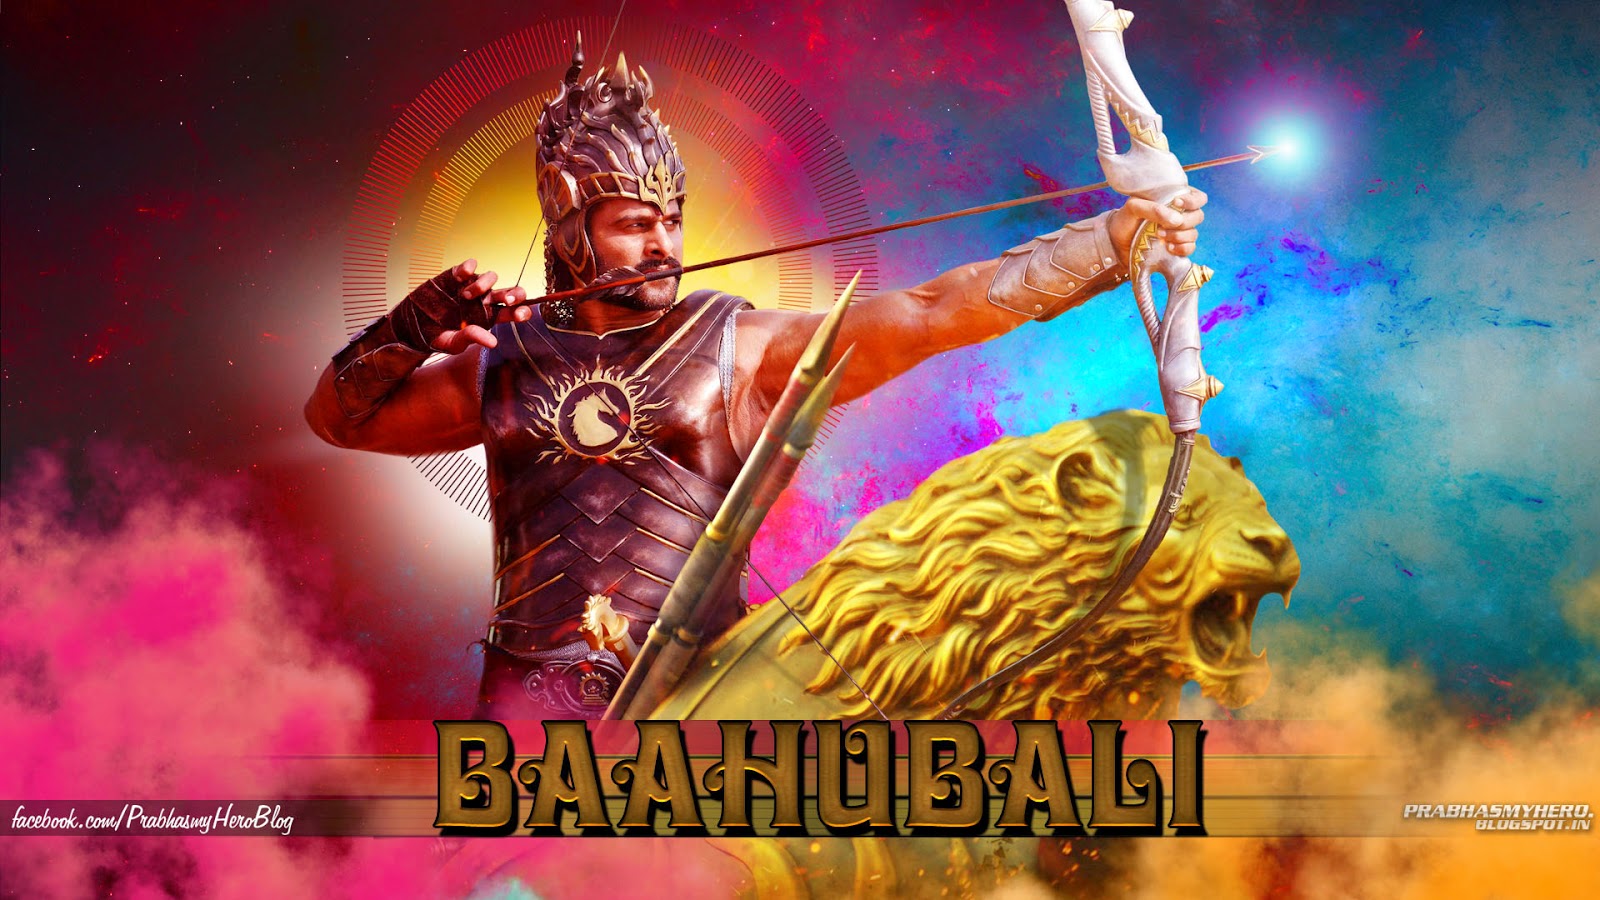 fondo de pantalla de baahubali,mitología,personaje de ficción,película,héroe,cg artwork